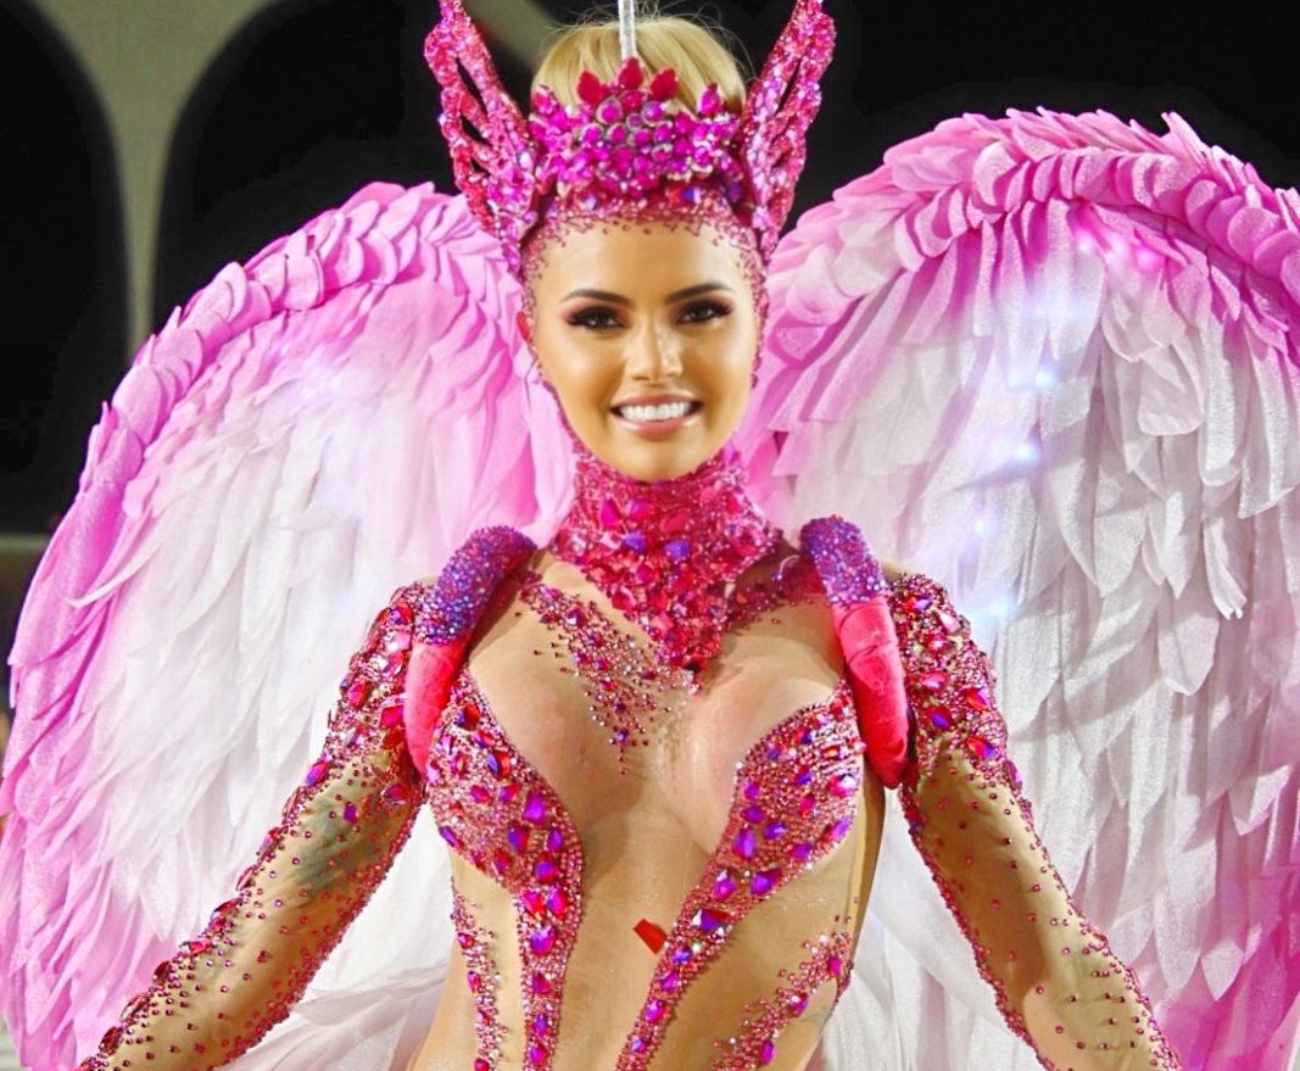 Vestida de Anjo do Amor, a empresária capixaba se apresentou no último sábado (27) com um body de tule de segunda pele, com variados tamanhos e tipos de cristais e pedras em tons de rosa